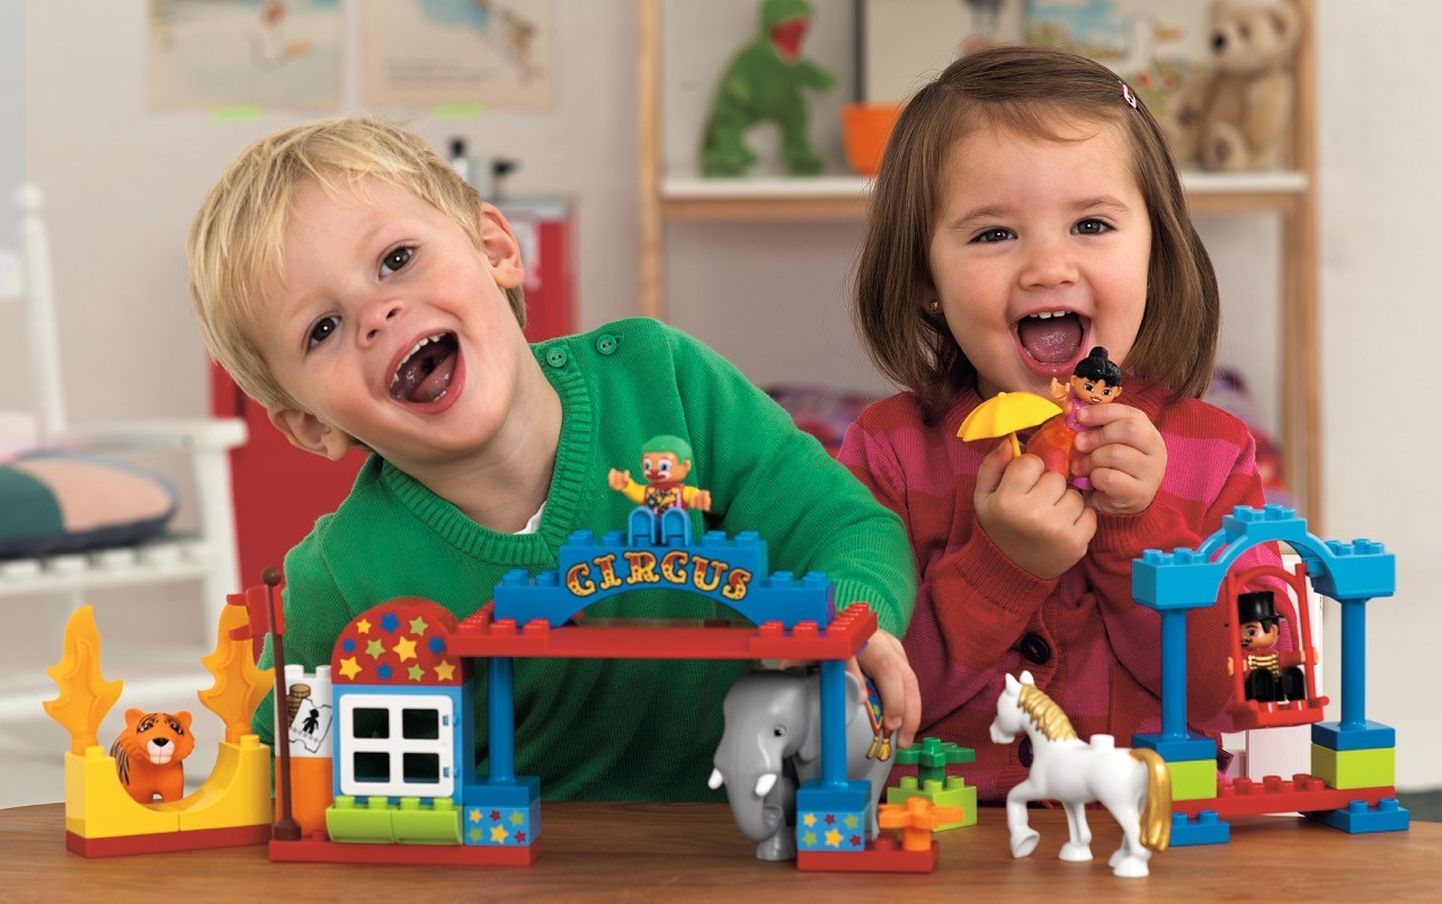 Legod on üks viis, kuidas lapsega ühiselt kvaliteetset aega veeta, lõbusaid jututeemasid leida ja talle eluks vajalikke motoorseid oskusi õpetada.